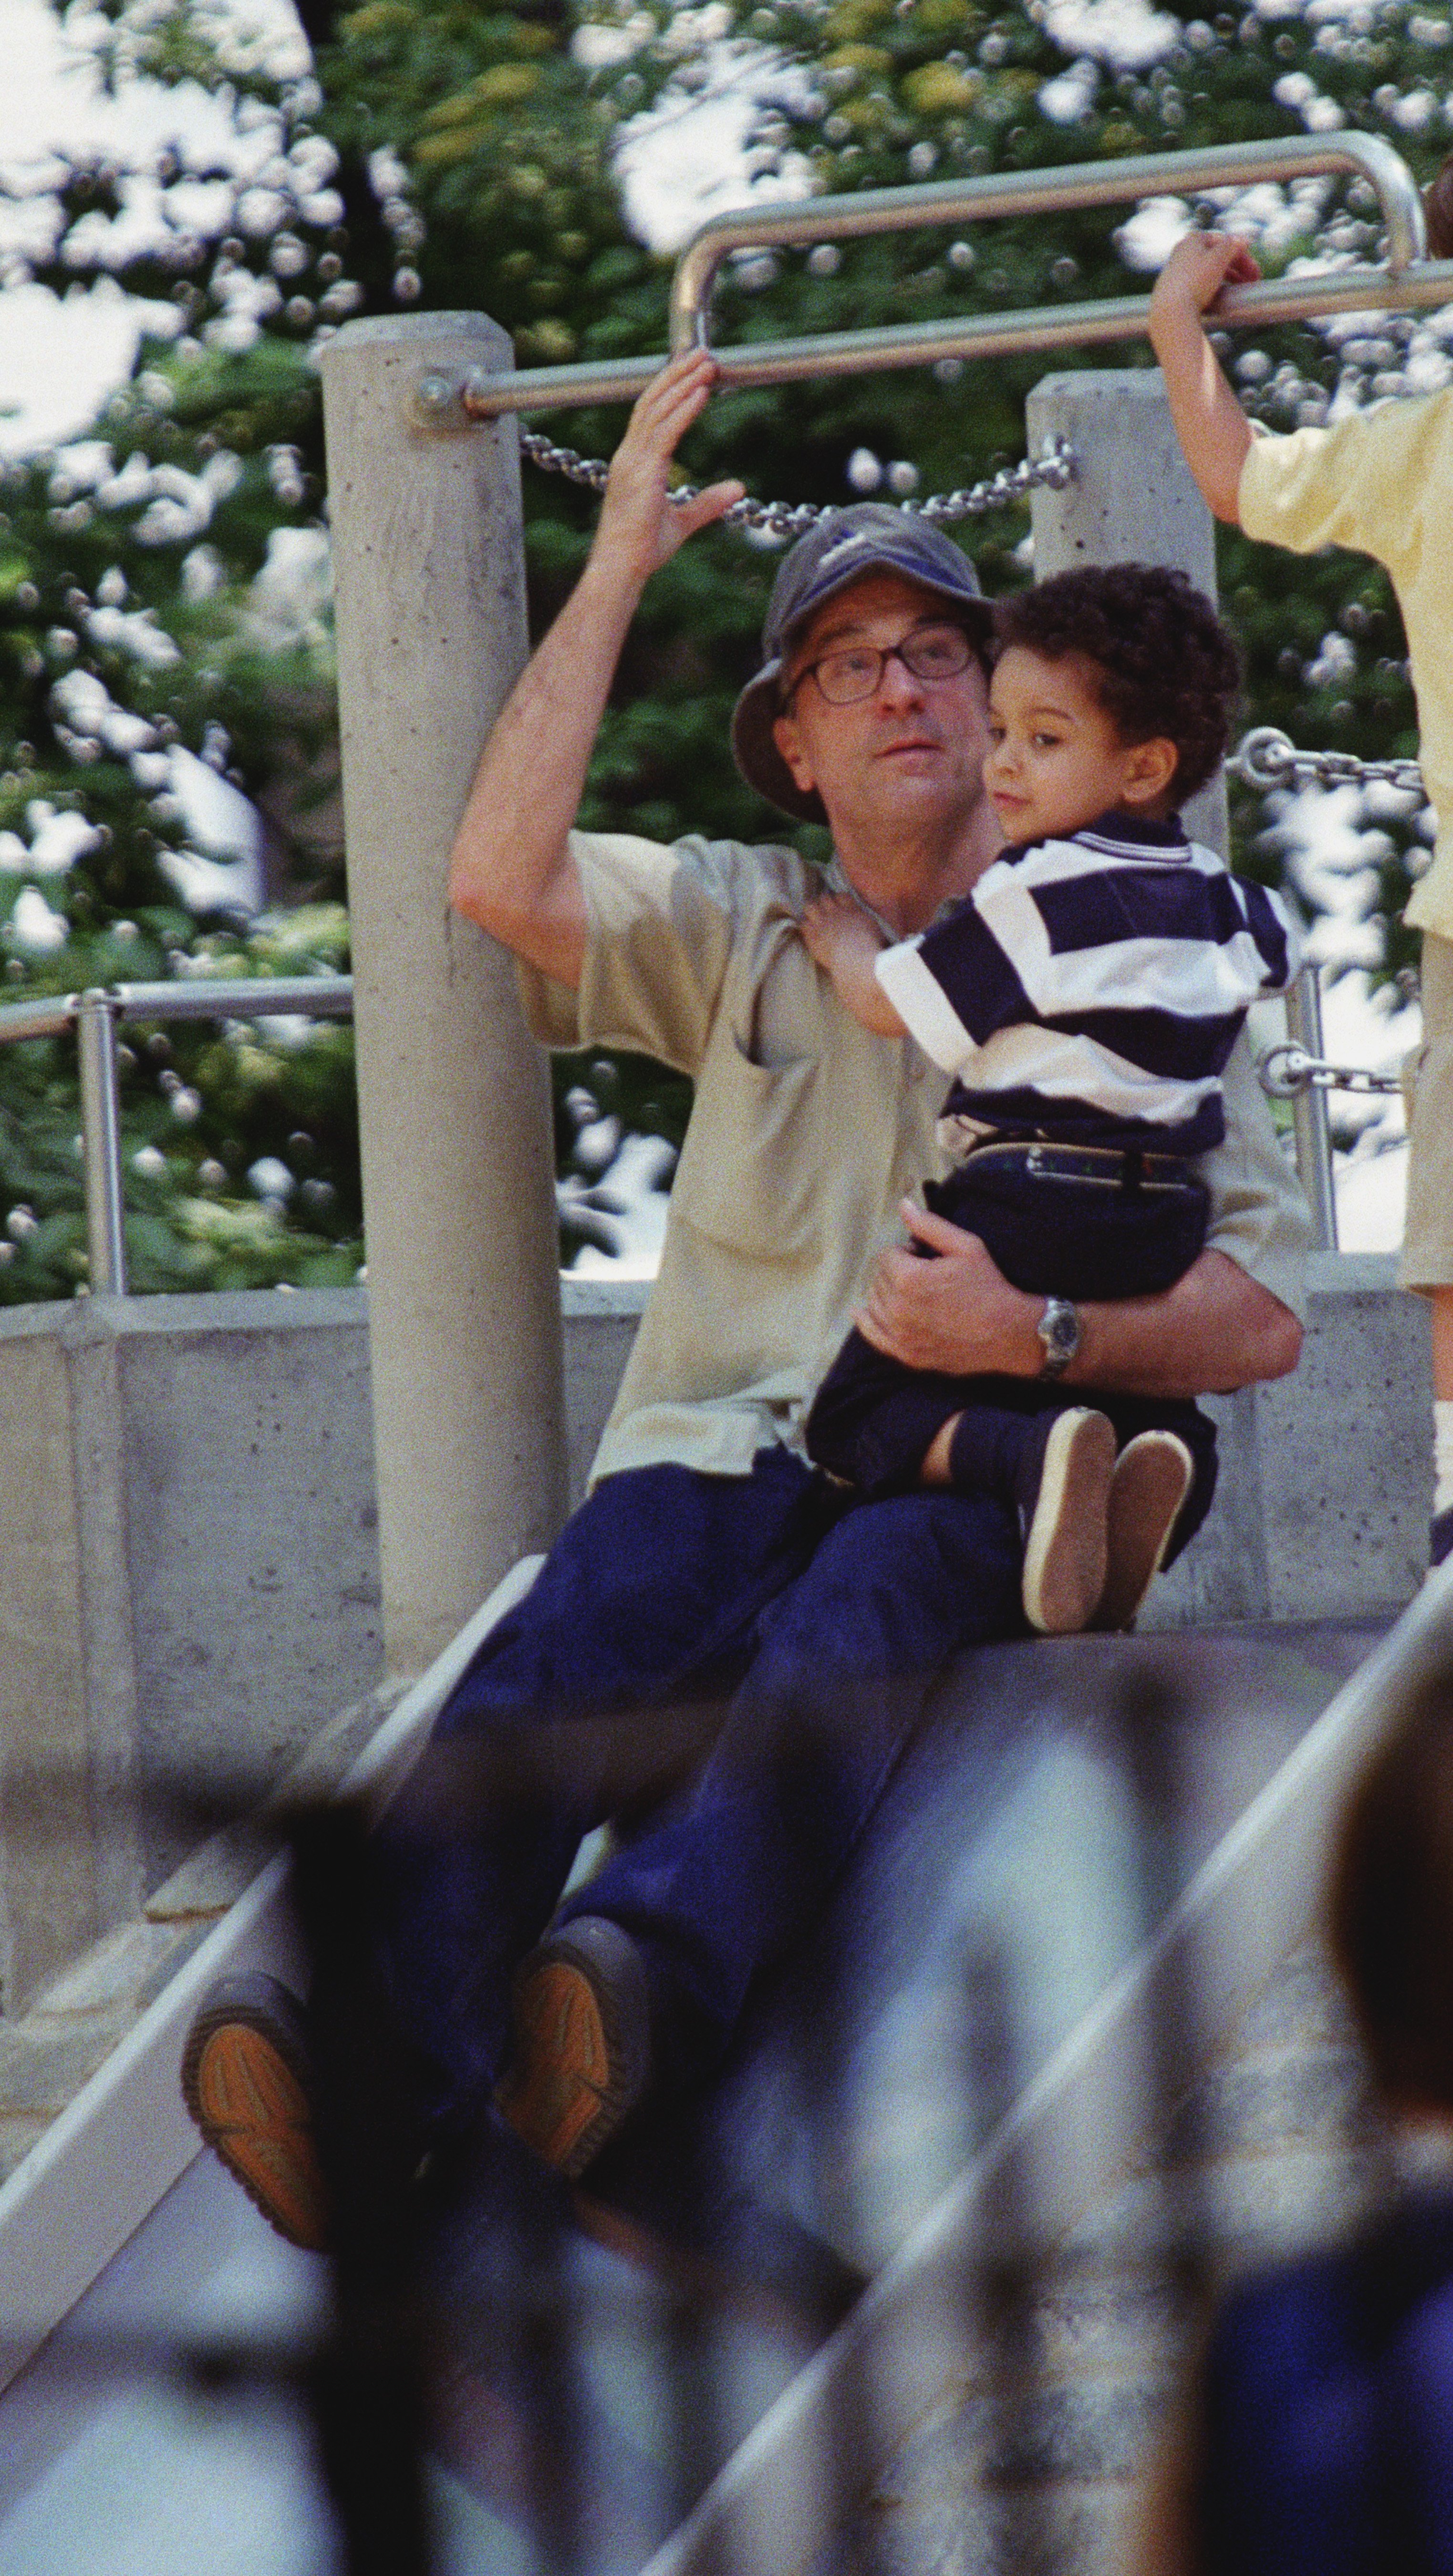 Robert De Niro et son fils, Elliot, sur l'étang de Sliding Pond à Central Park, NYC. | Source : Getty Images